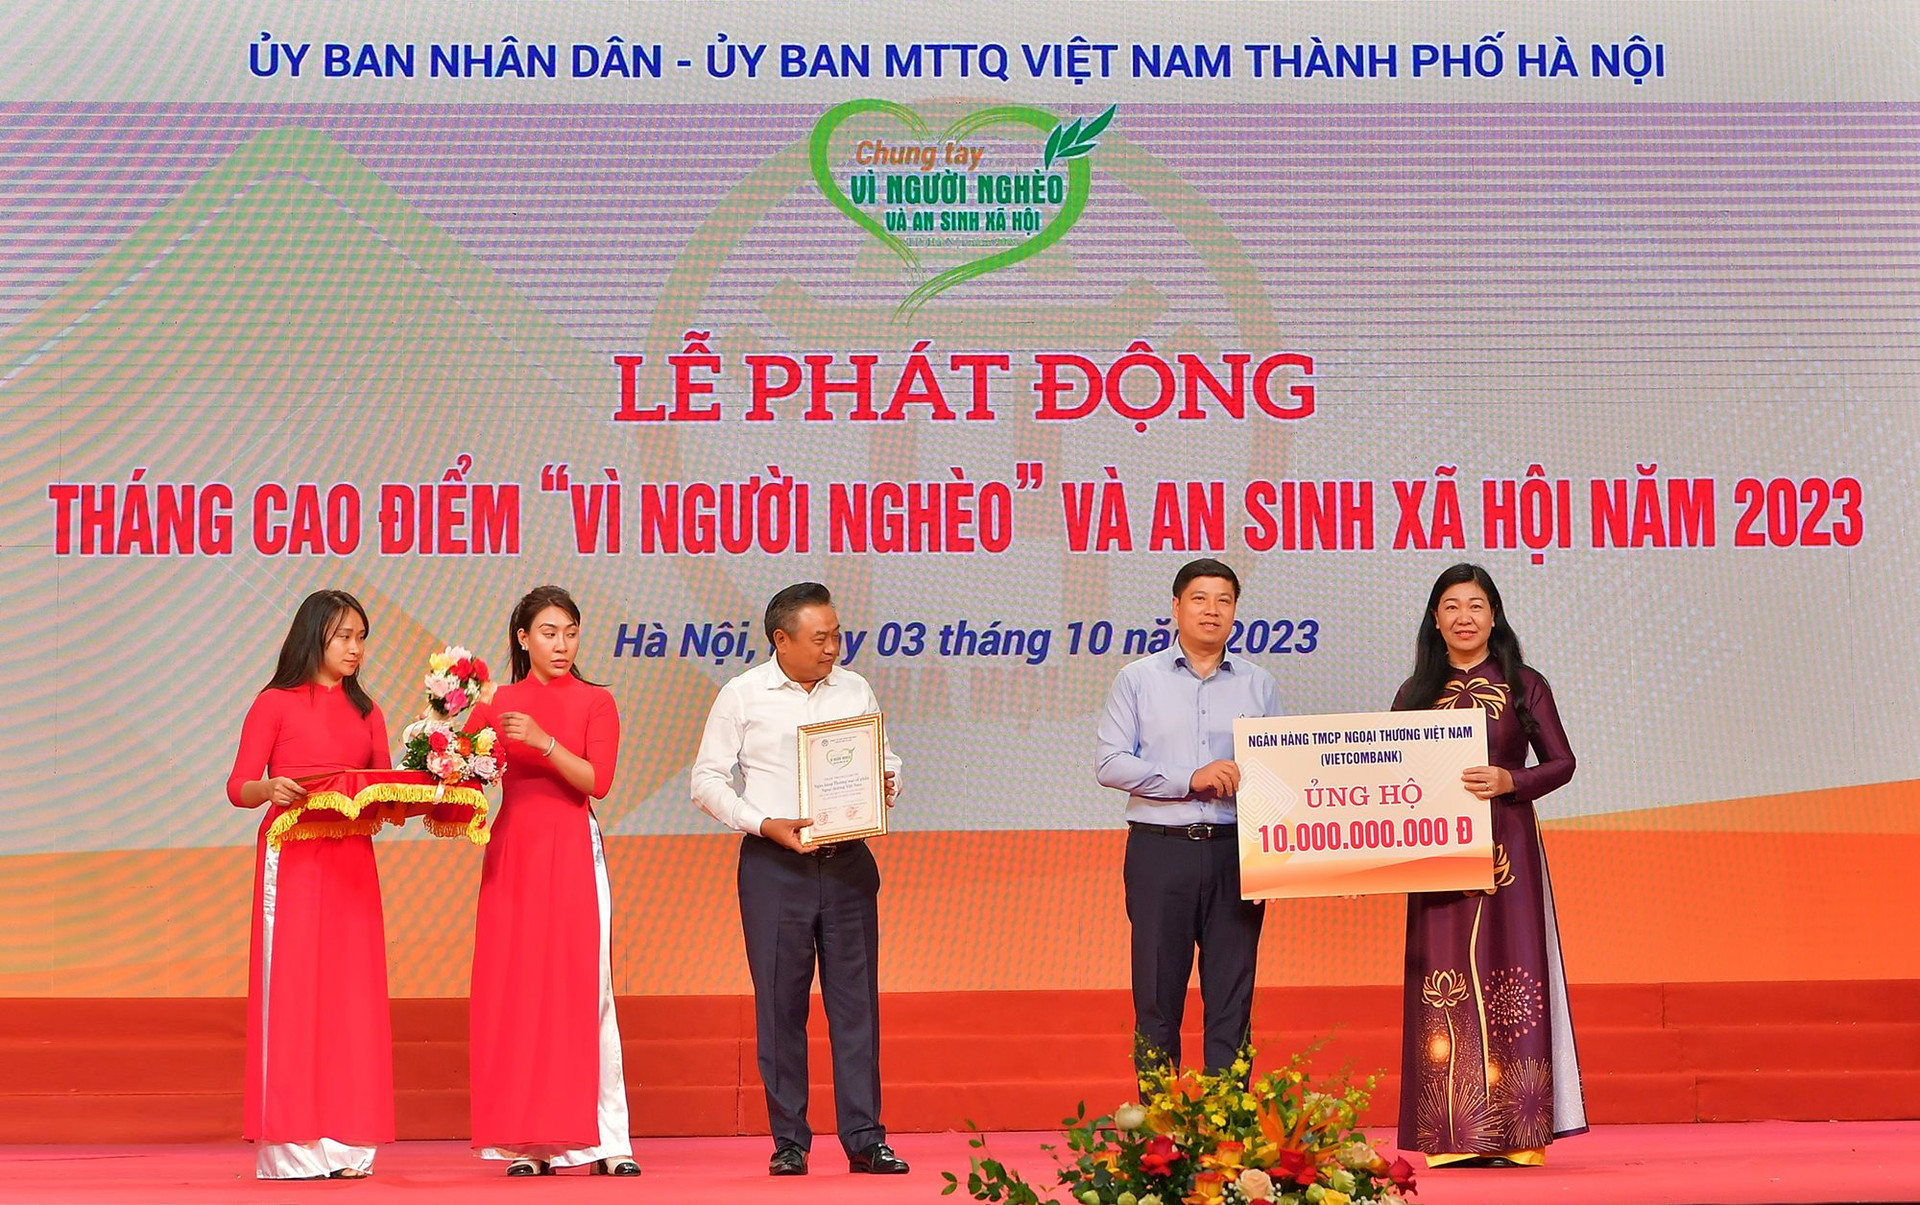 Vietcombank ủng hộ 10 tỷ đồng hưởng ứng Tháng cao điểm “Vì người nghèo" TP.Hà Nội